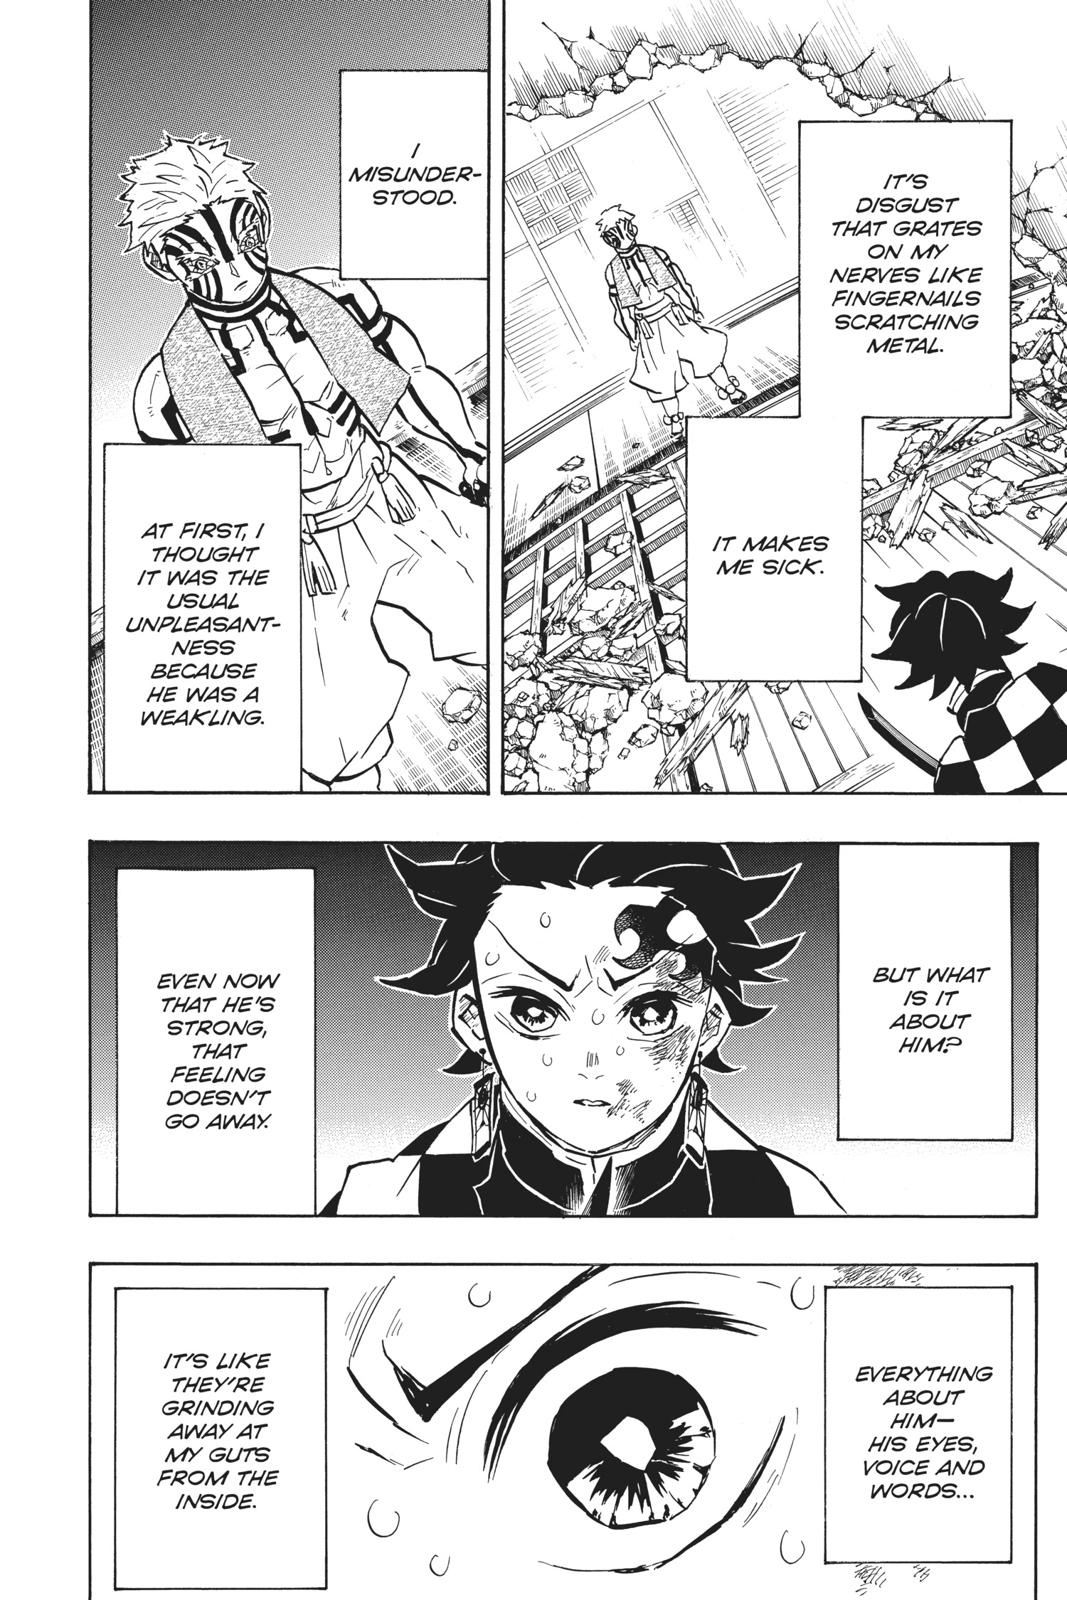 Demon Slayer Manga Manga Chapter - 149 - image 1